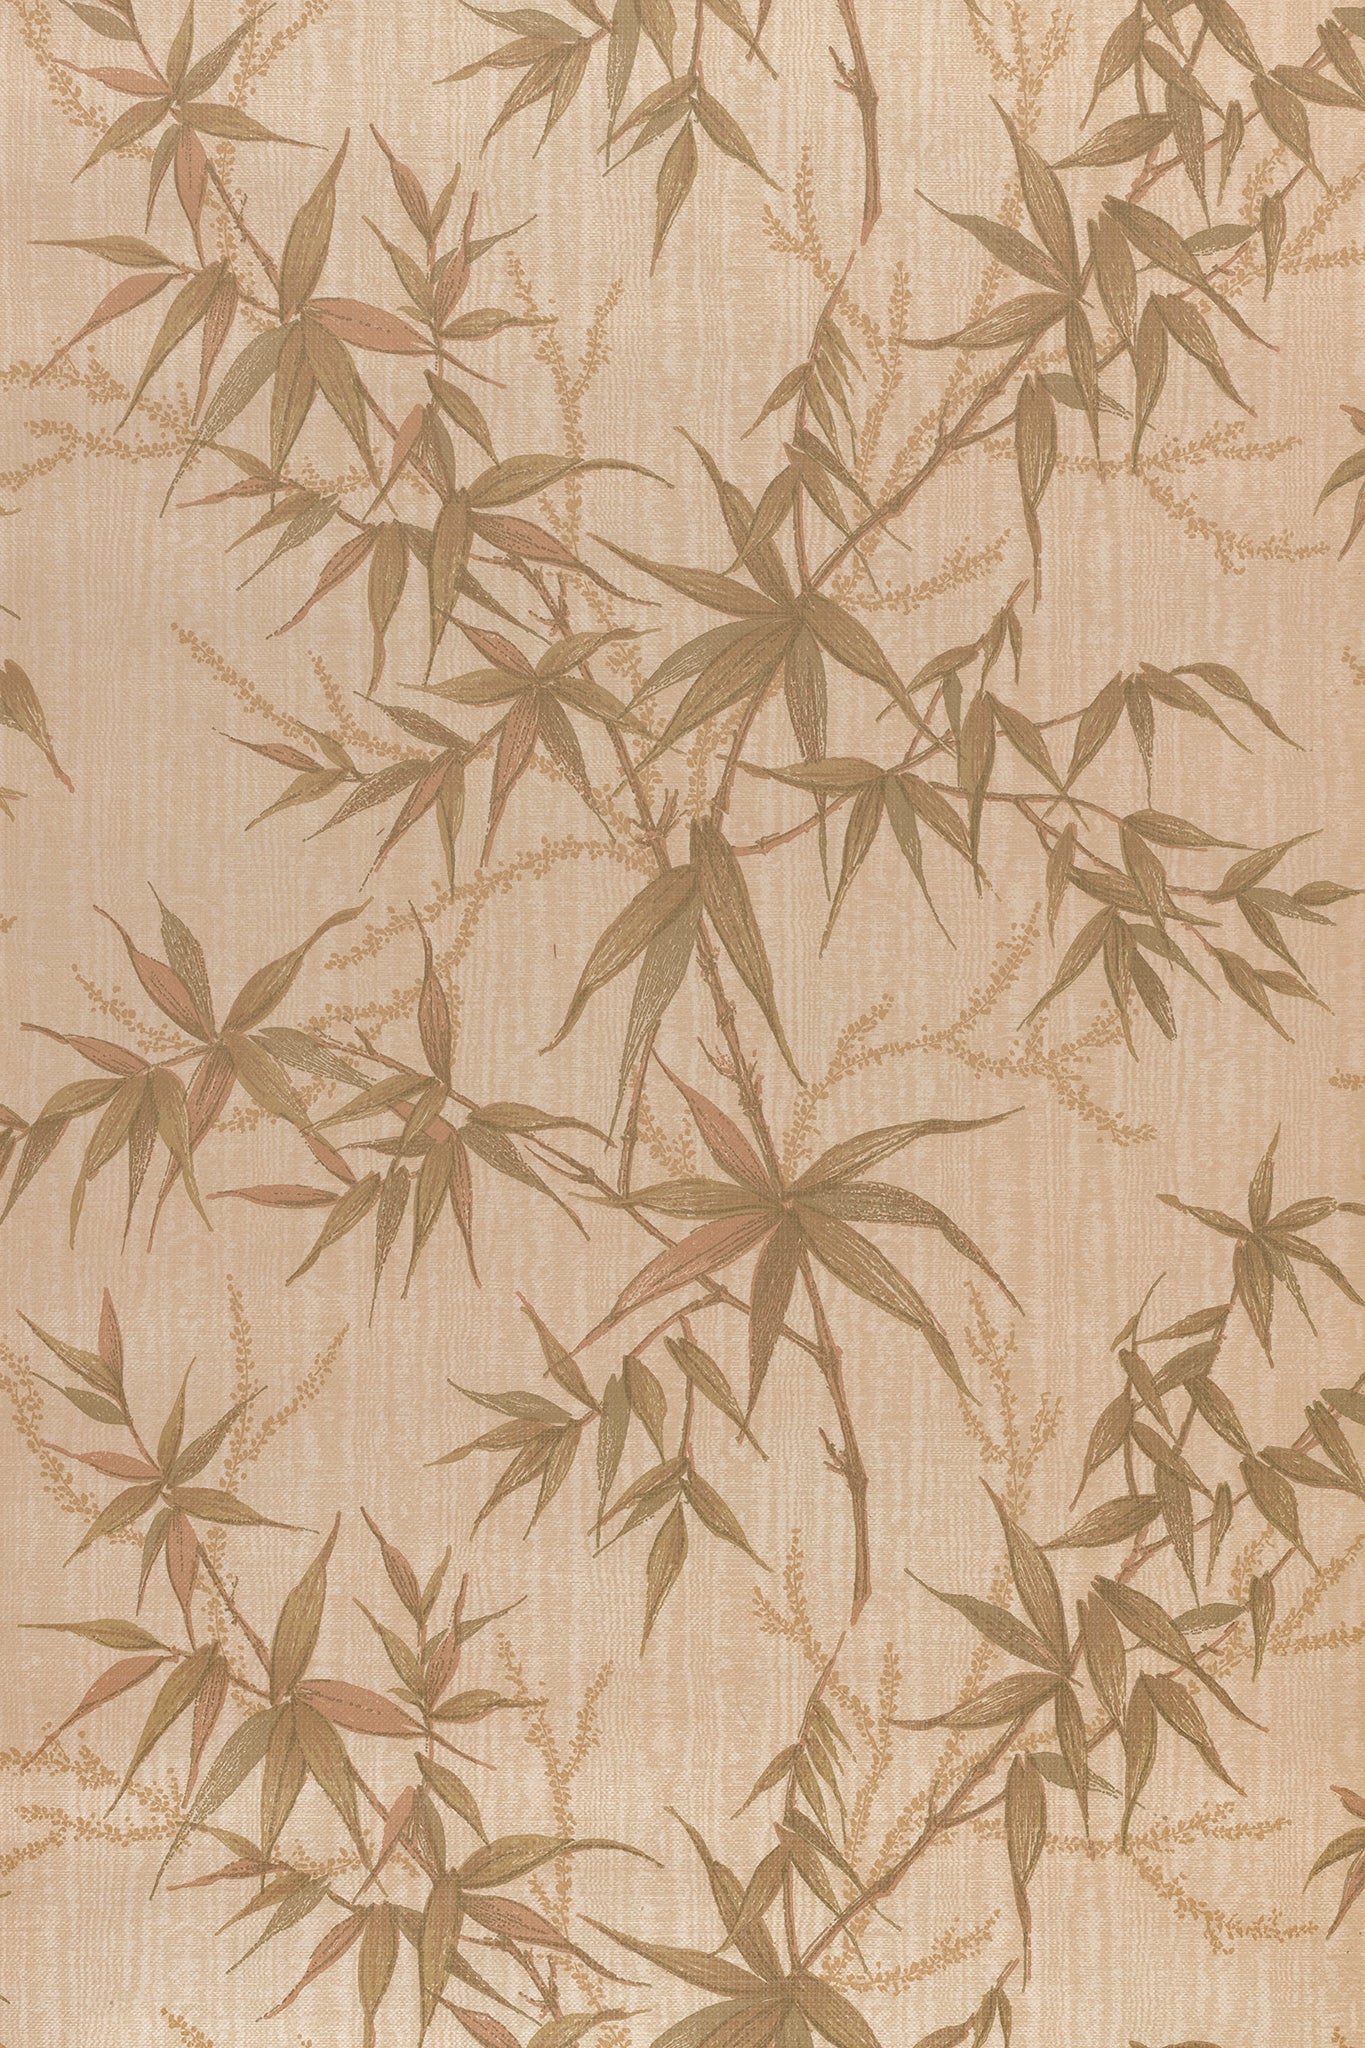 Beige A1 Content Creation Backdrop - Botanical Vintage Wallpaper (59.4 x 84.1 cm)